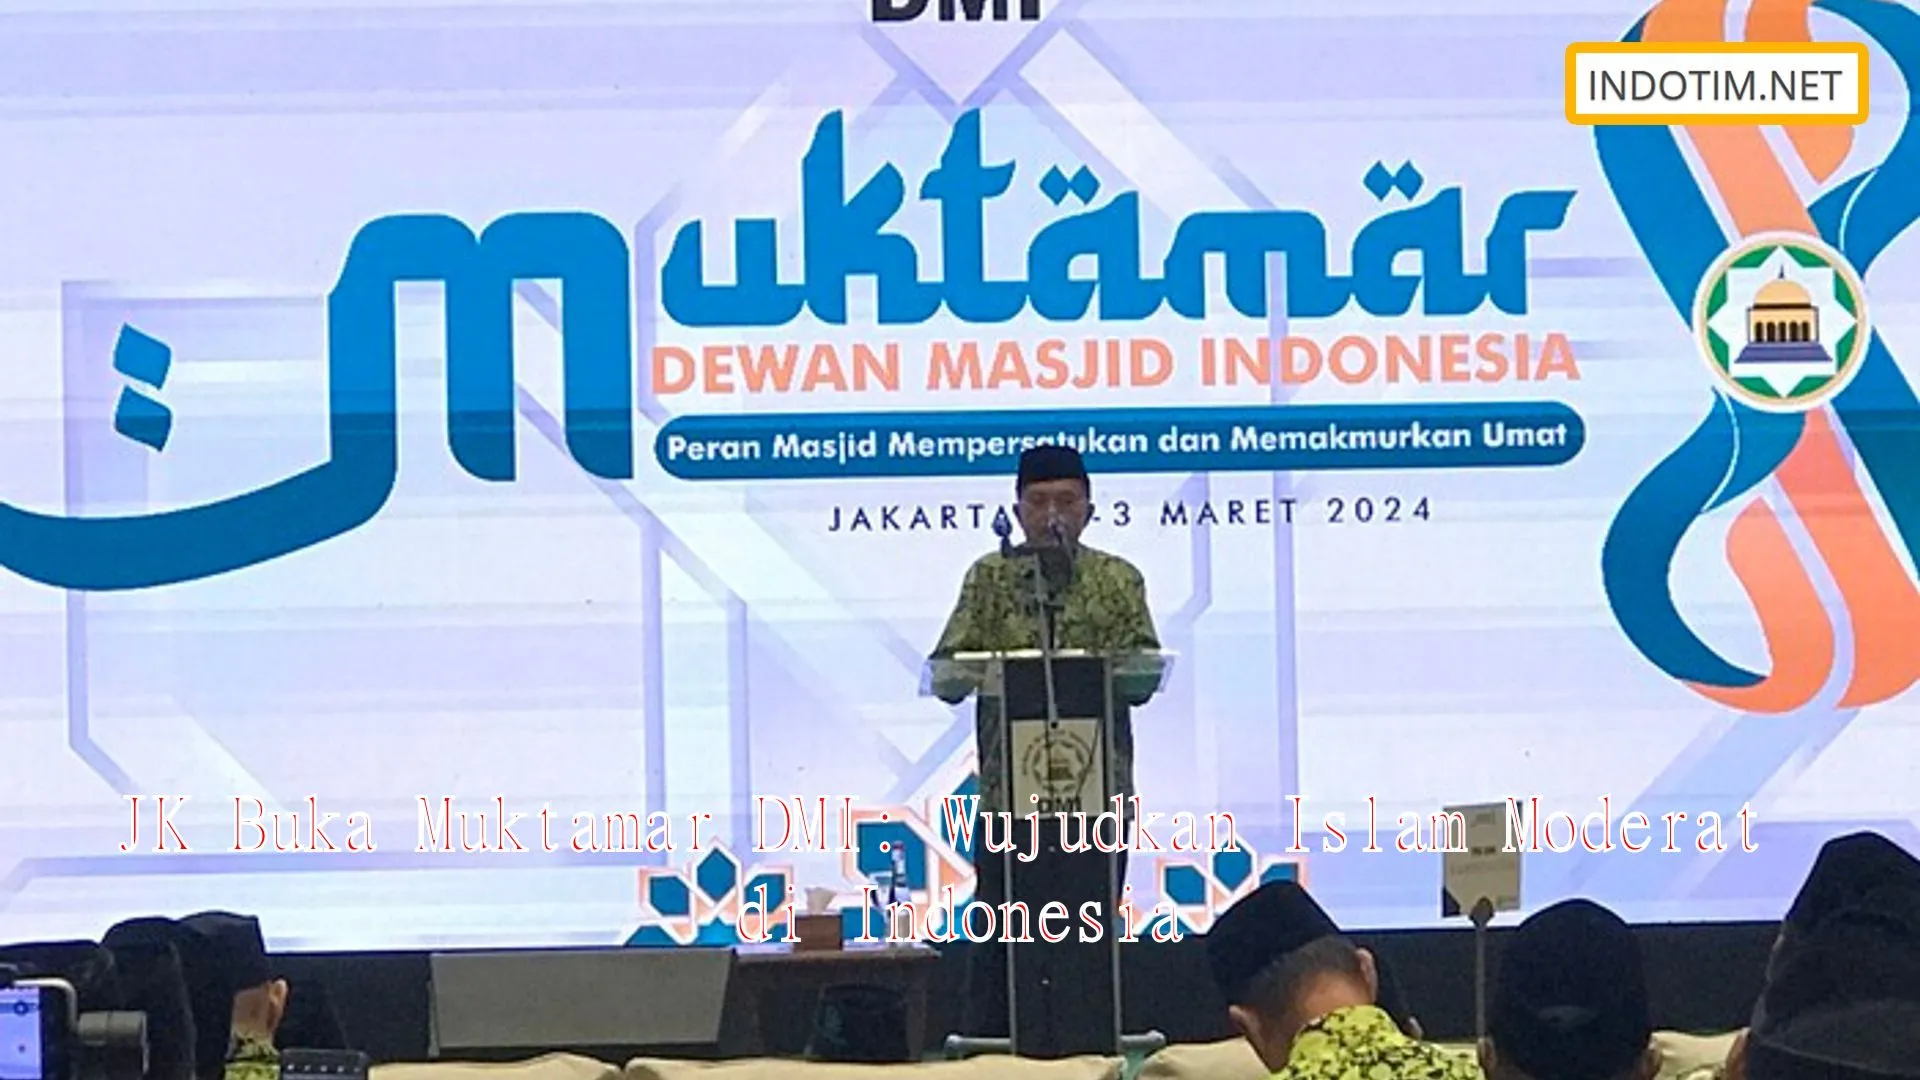 JK Buka Muktamar DMI: Wujudkan Islam Moderat di Indonesia